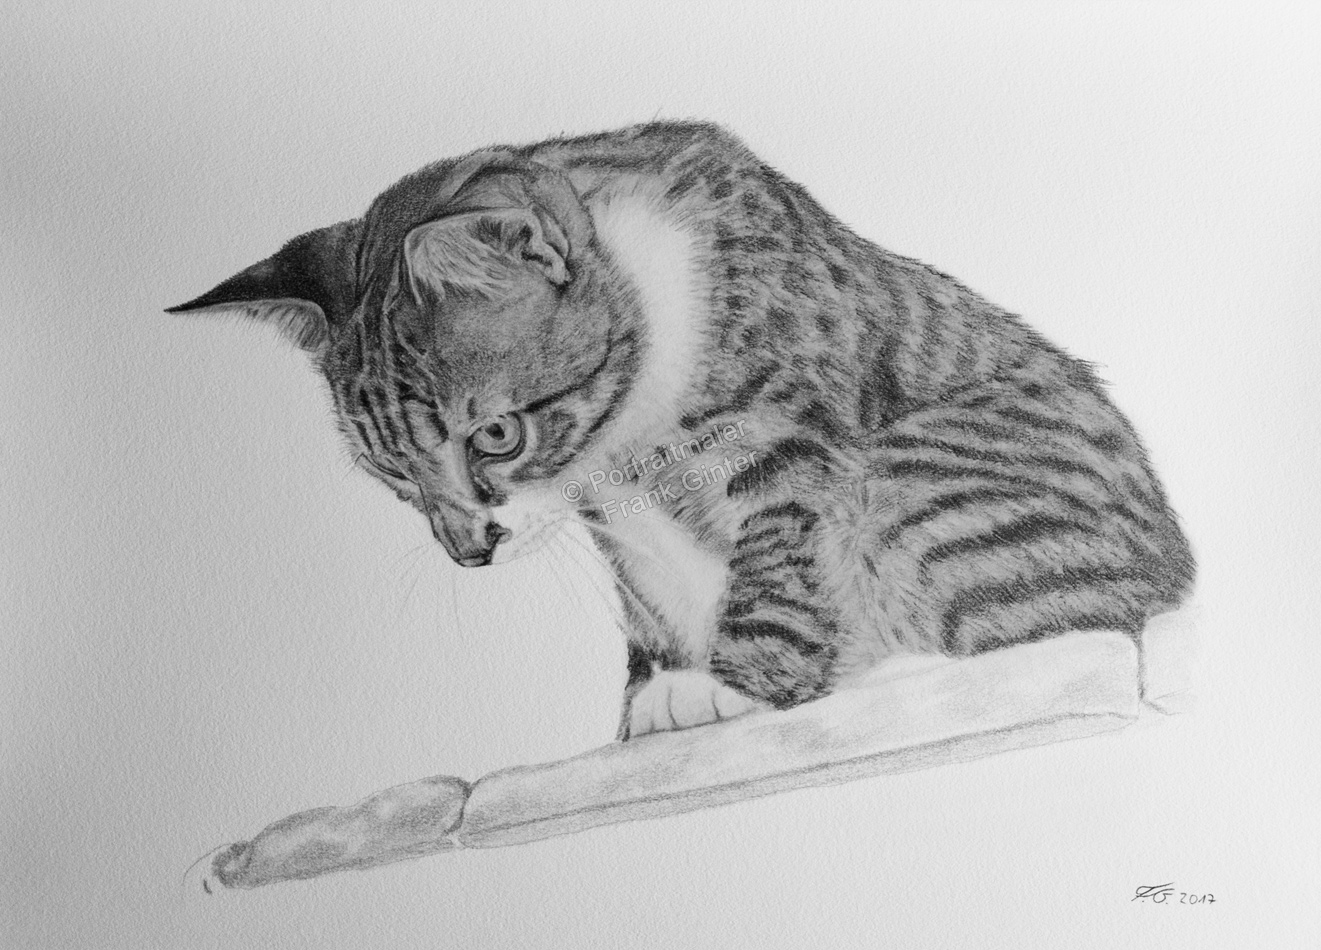 Bleistiftzeichnung, von Hand gezeichnetes Tierportrait, Katze mit Bleistift gezeichnet